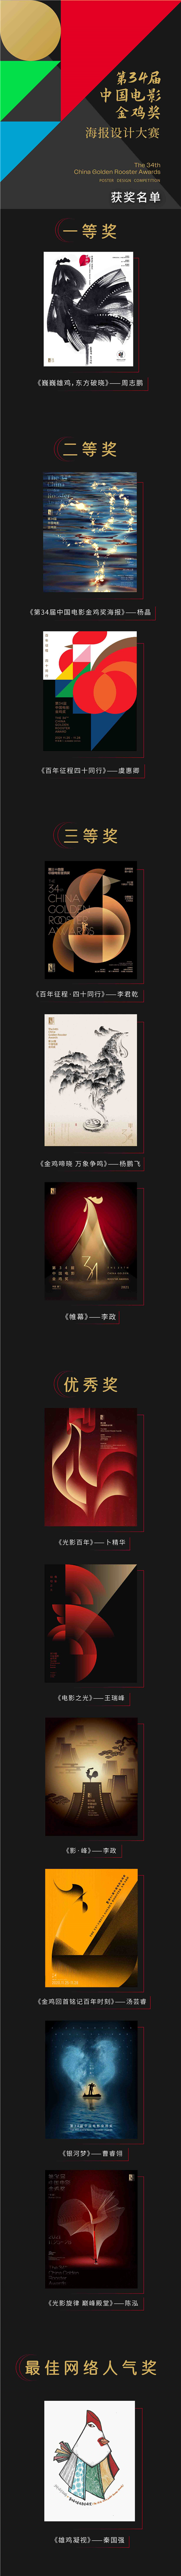 第34届中国电影金鸡奖海报设计大赛获奖名单揭晓